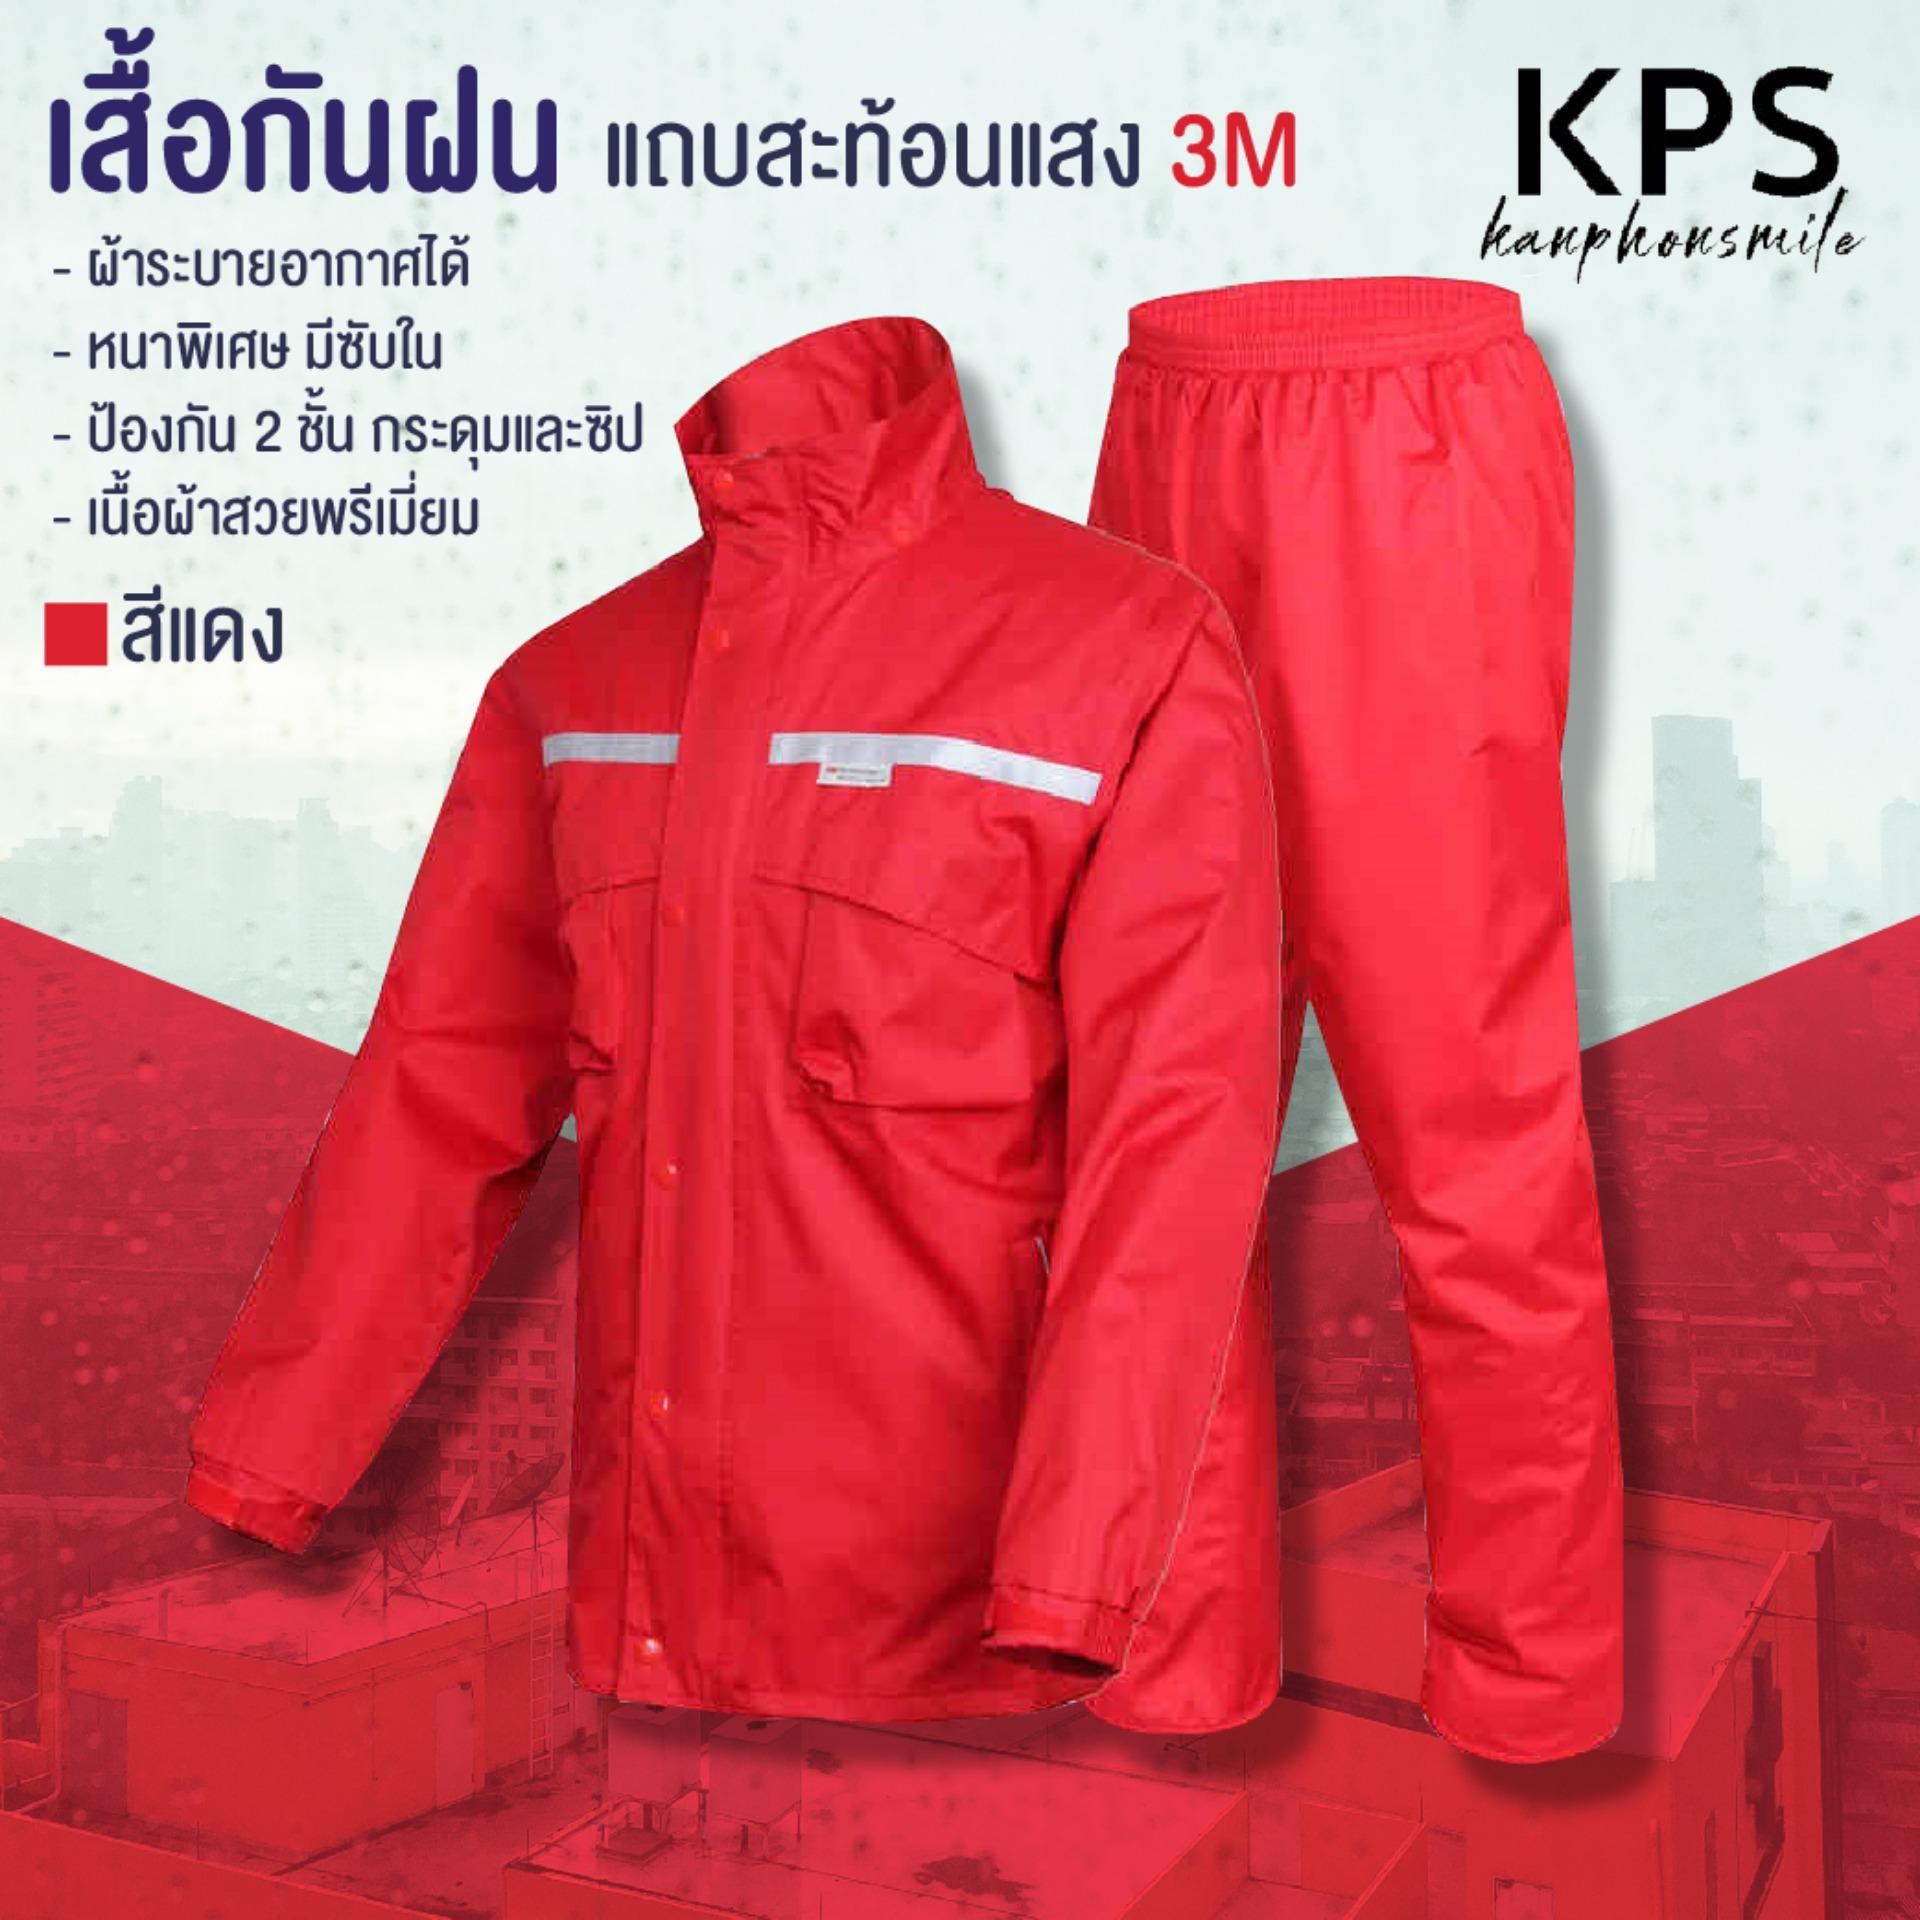 Kanphonsmile เสื้อกันฝน ชุดกันฝน กันฝน 100% แถบสะท้อนแสง 3M แบบหนา คุณภาพดี มีซับใน พร้อมถุงผ้าจัดเก็บ สีแดง